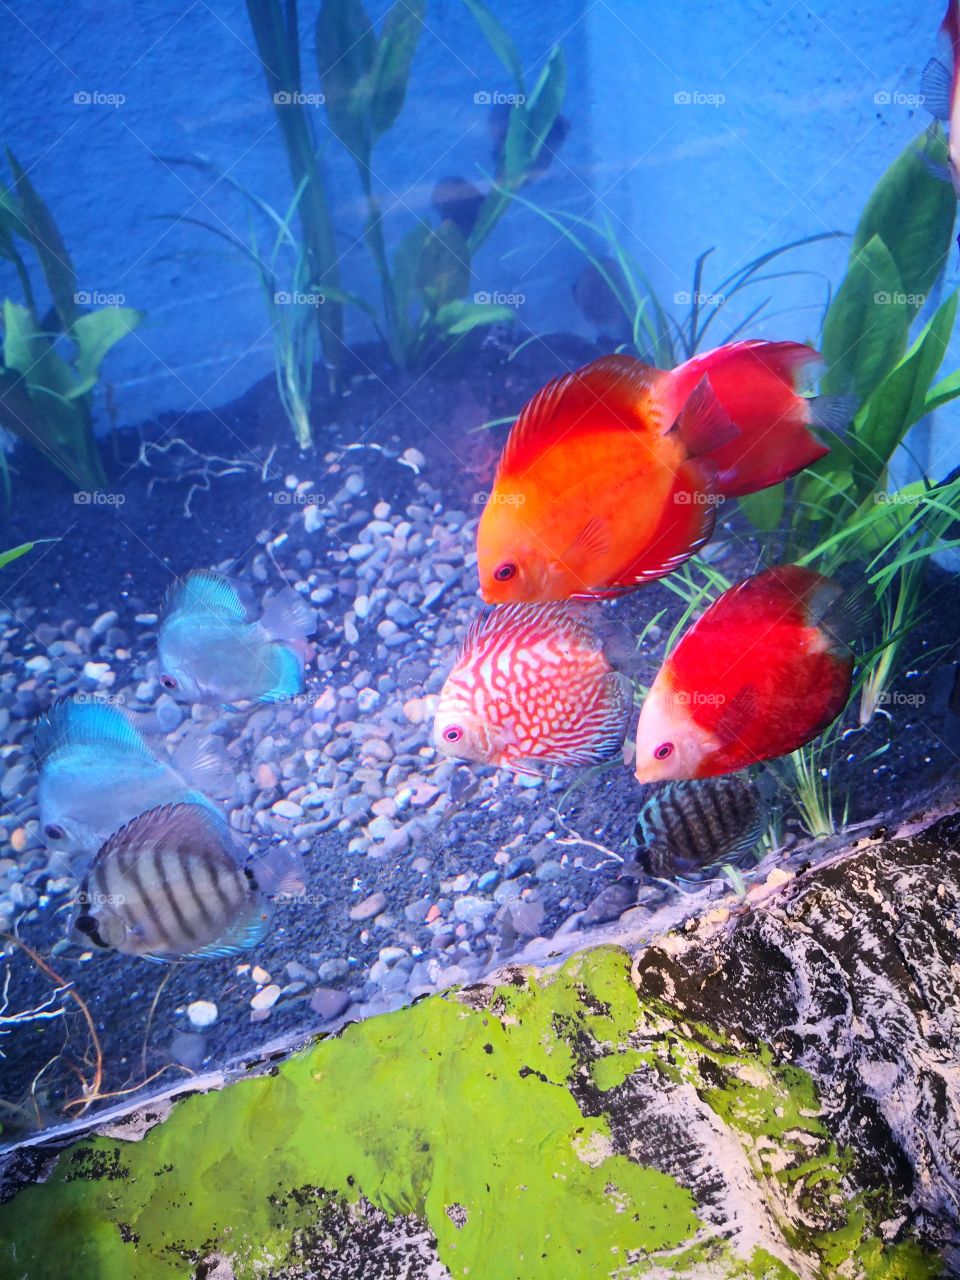 beautiful colored fish. salt water.